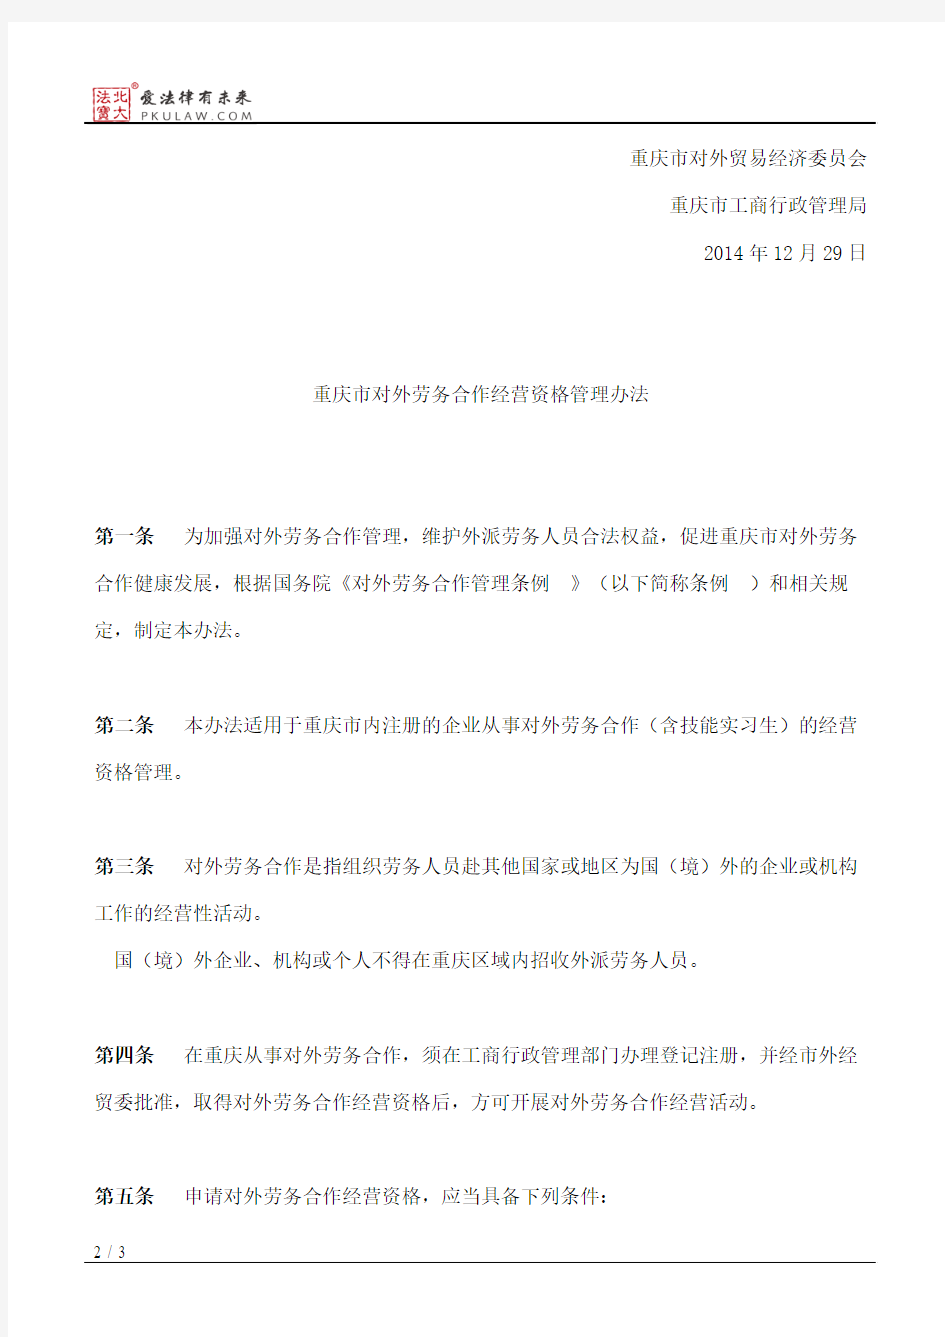 重庆市对外贸易经济委员会、重庆市工商行政管理局关于印发《重庆